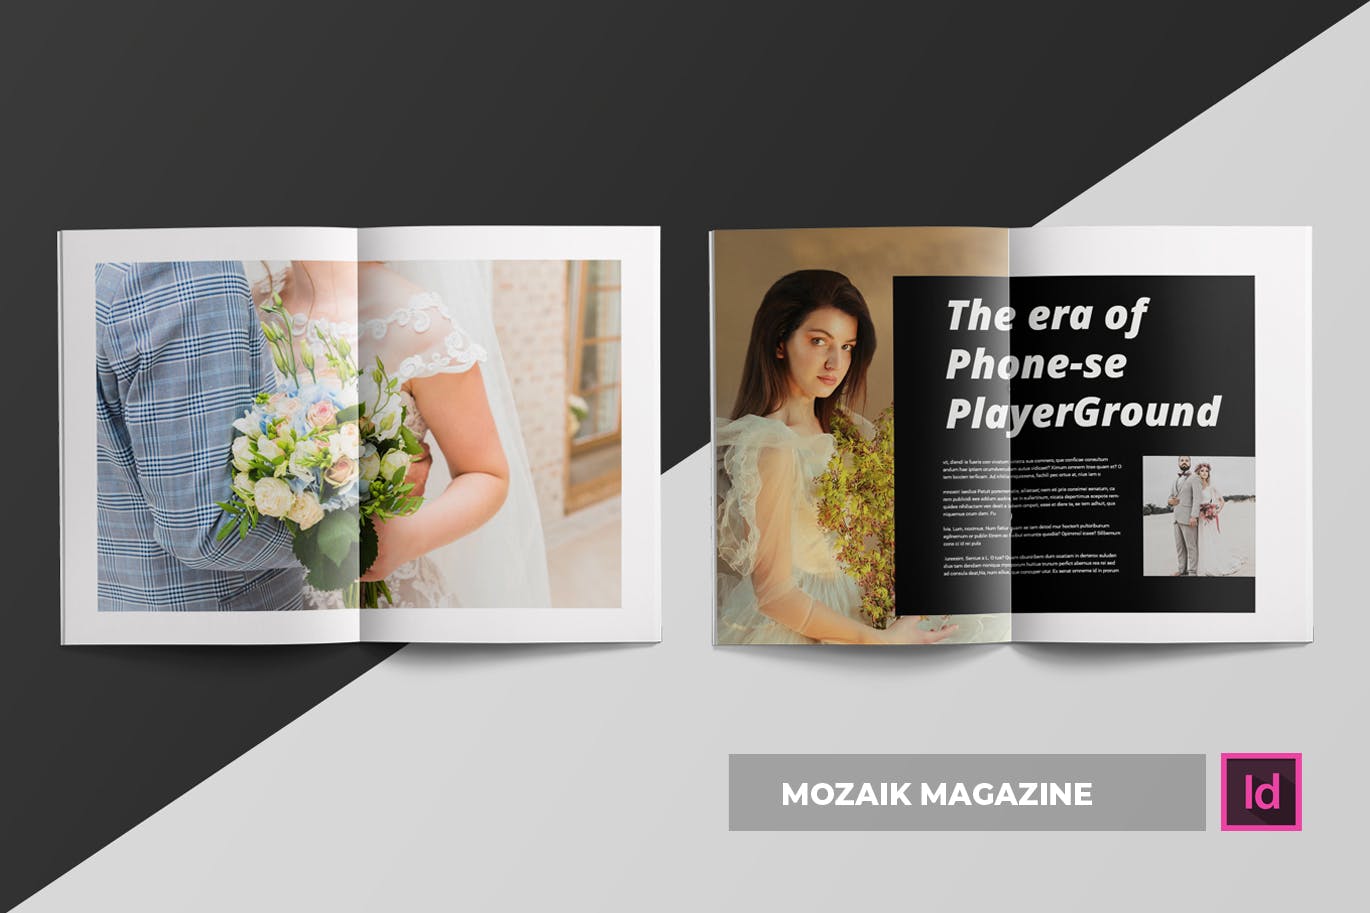 时尚生活主题非凡图库精选杂志排版设计INDD模板 Mozaik | Magazine Template插图(1)